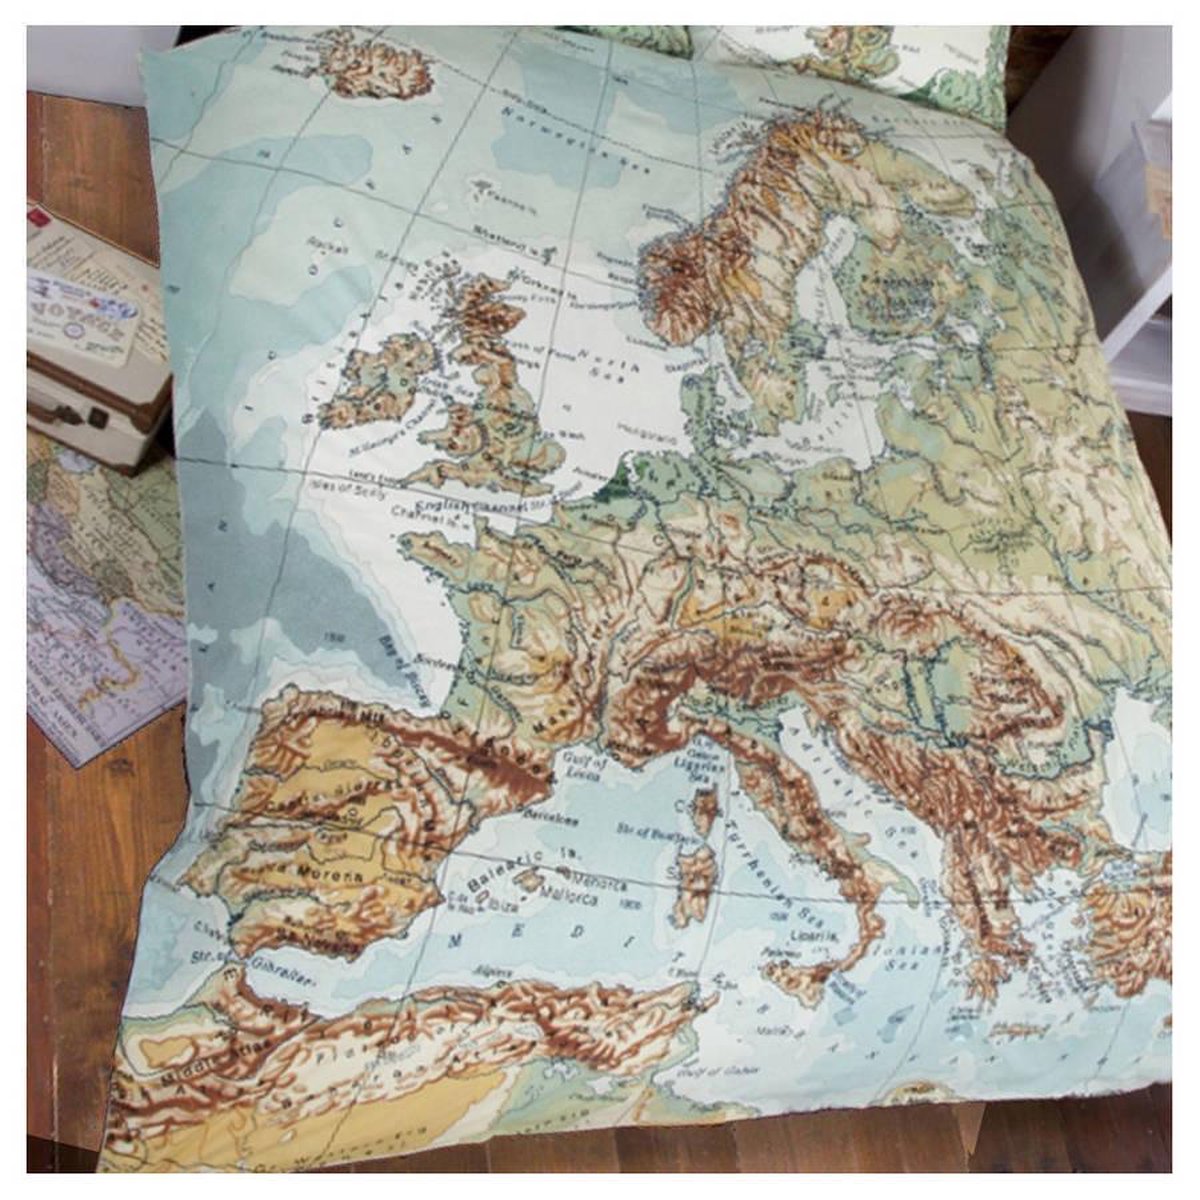 Vintage dekbedovertrek - wereldkaart Europa - Lits jumeaux maat met 2 kussenslopen